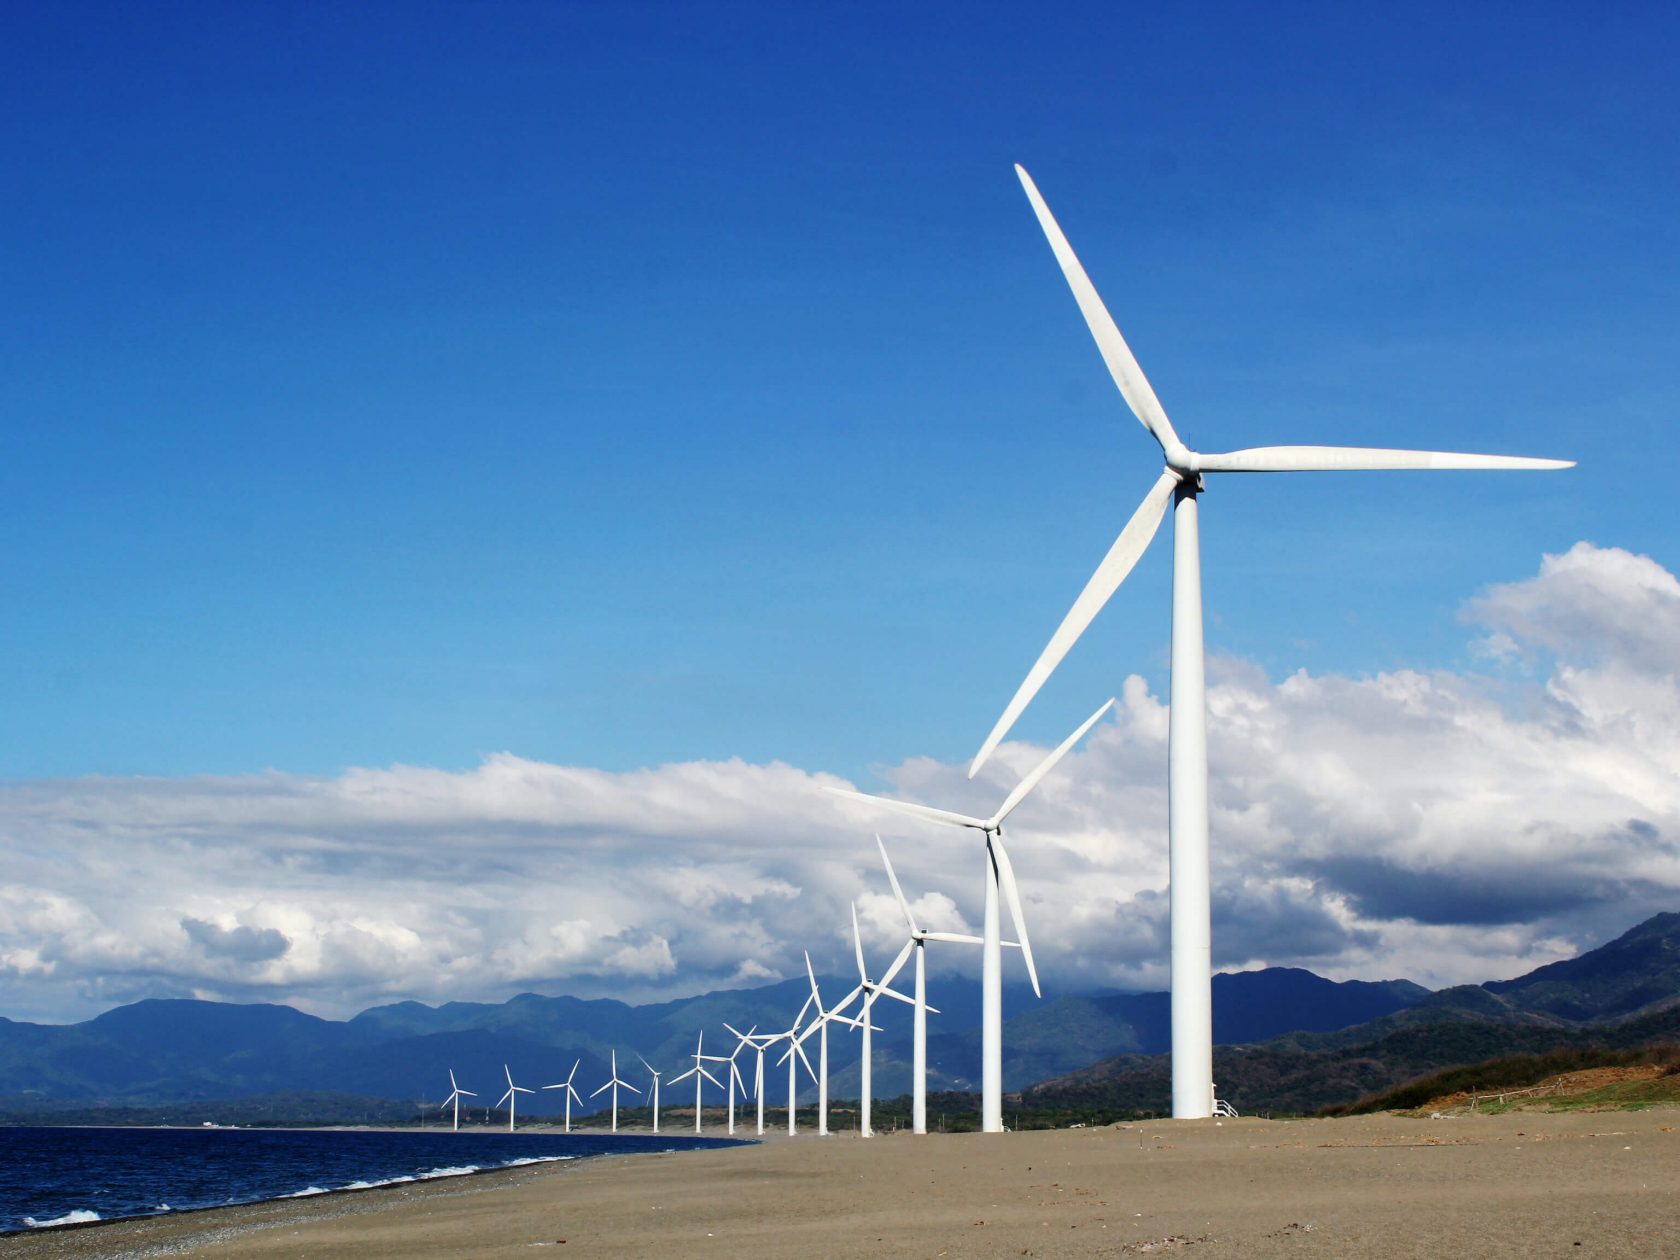 Soluciones de filtrado de energía para turbinas eólicas, de MANN+HUMMEL